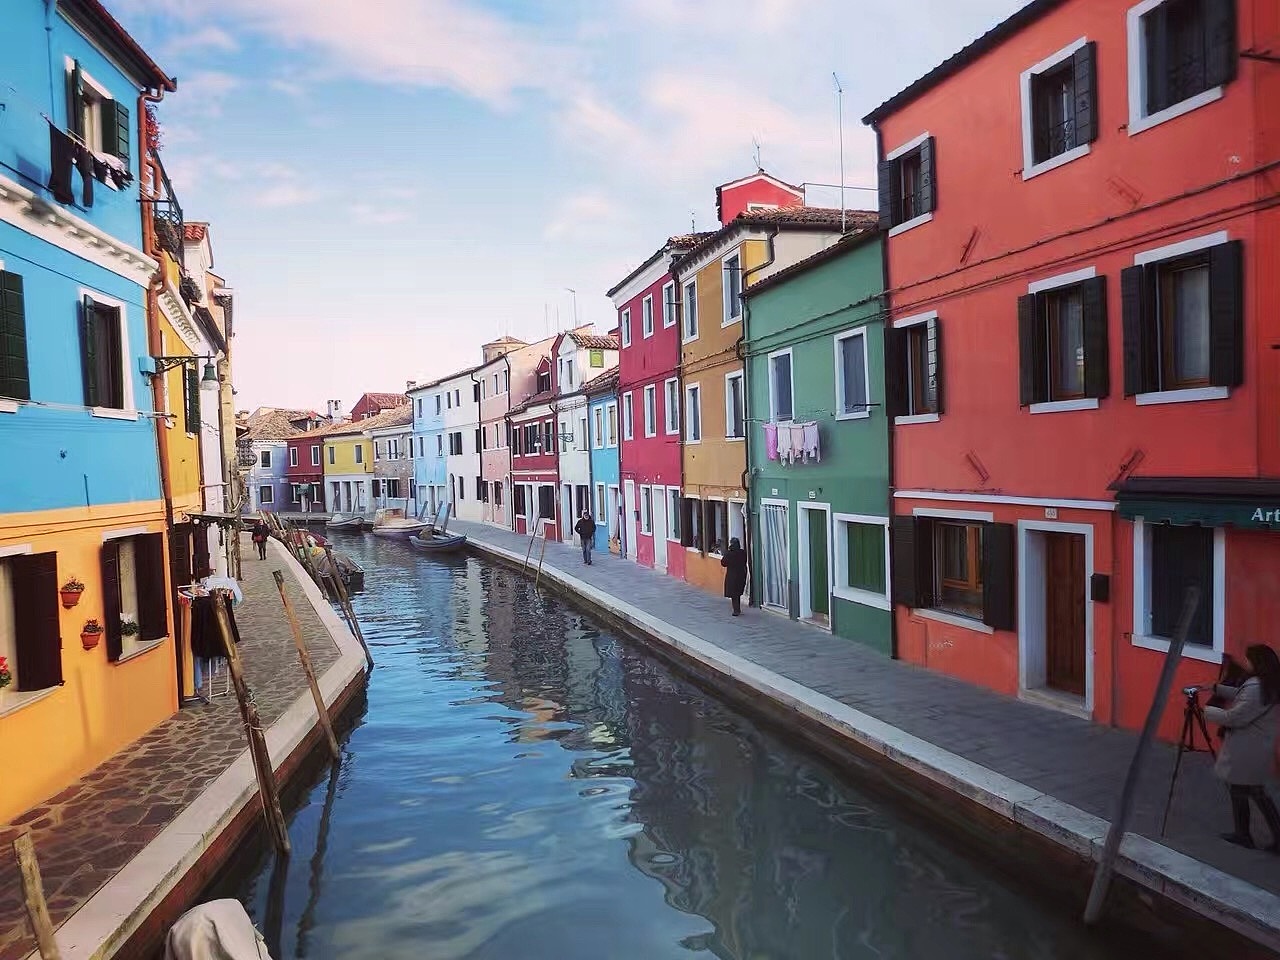 意大利威尼斯水城风景桌面壁纸-壁纸图片大全